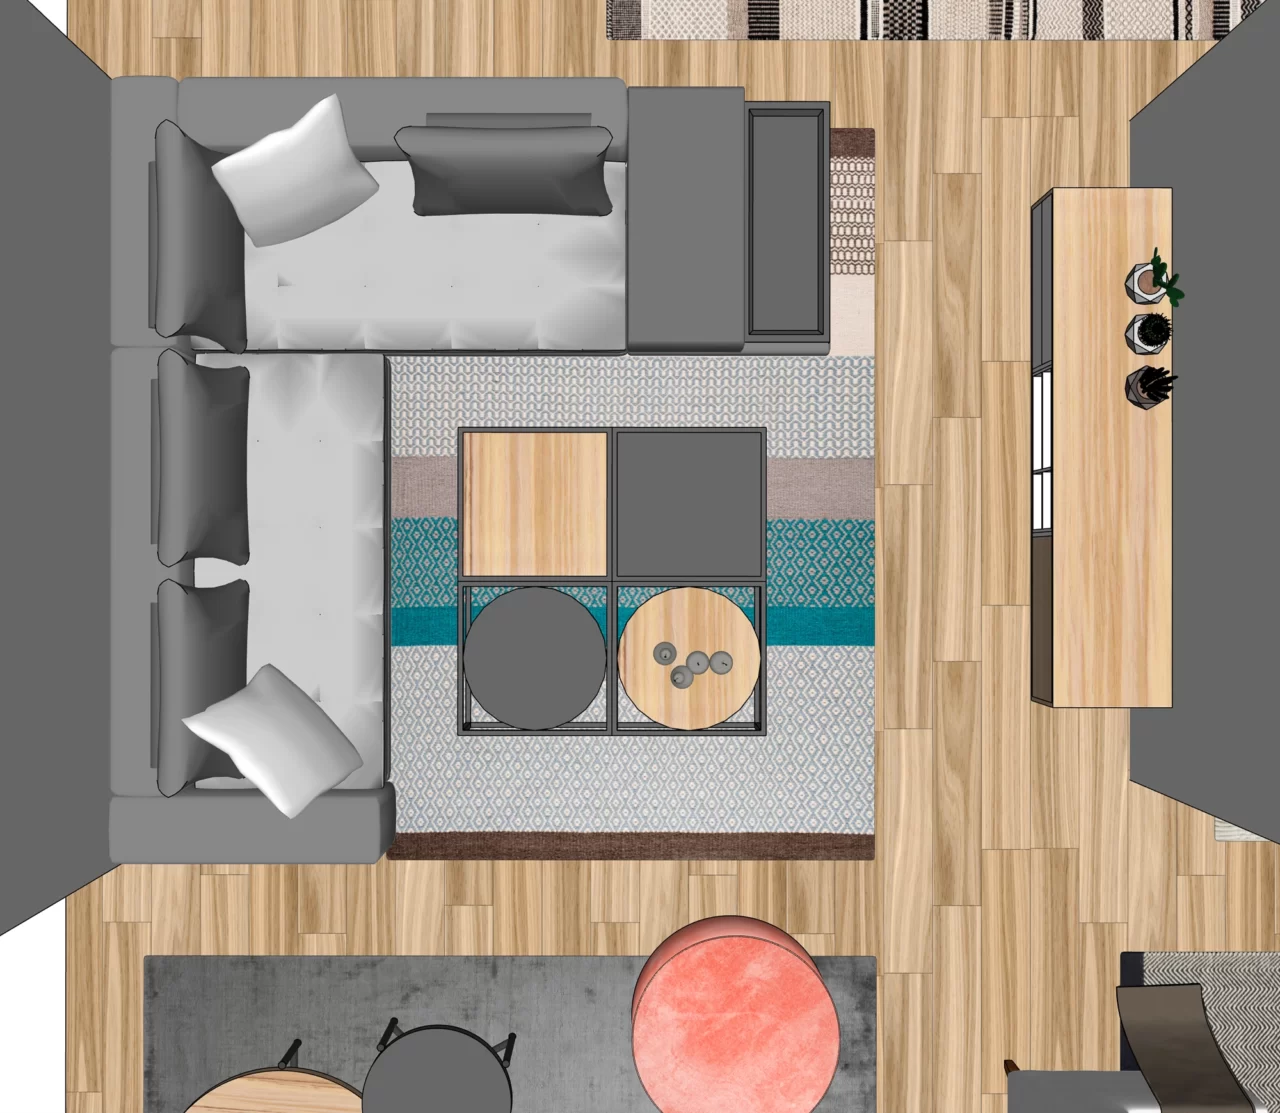 Sofa Company - 3D Designs